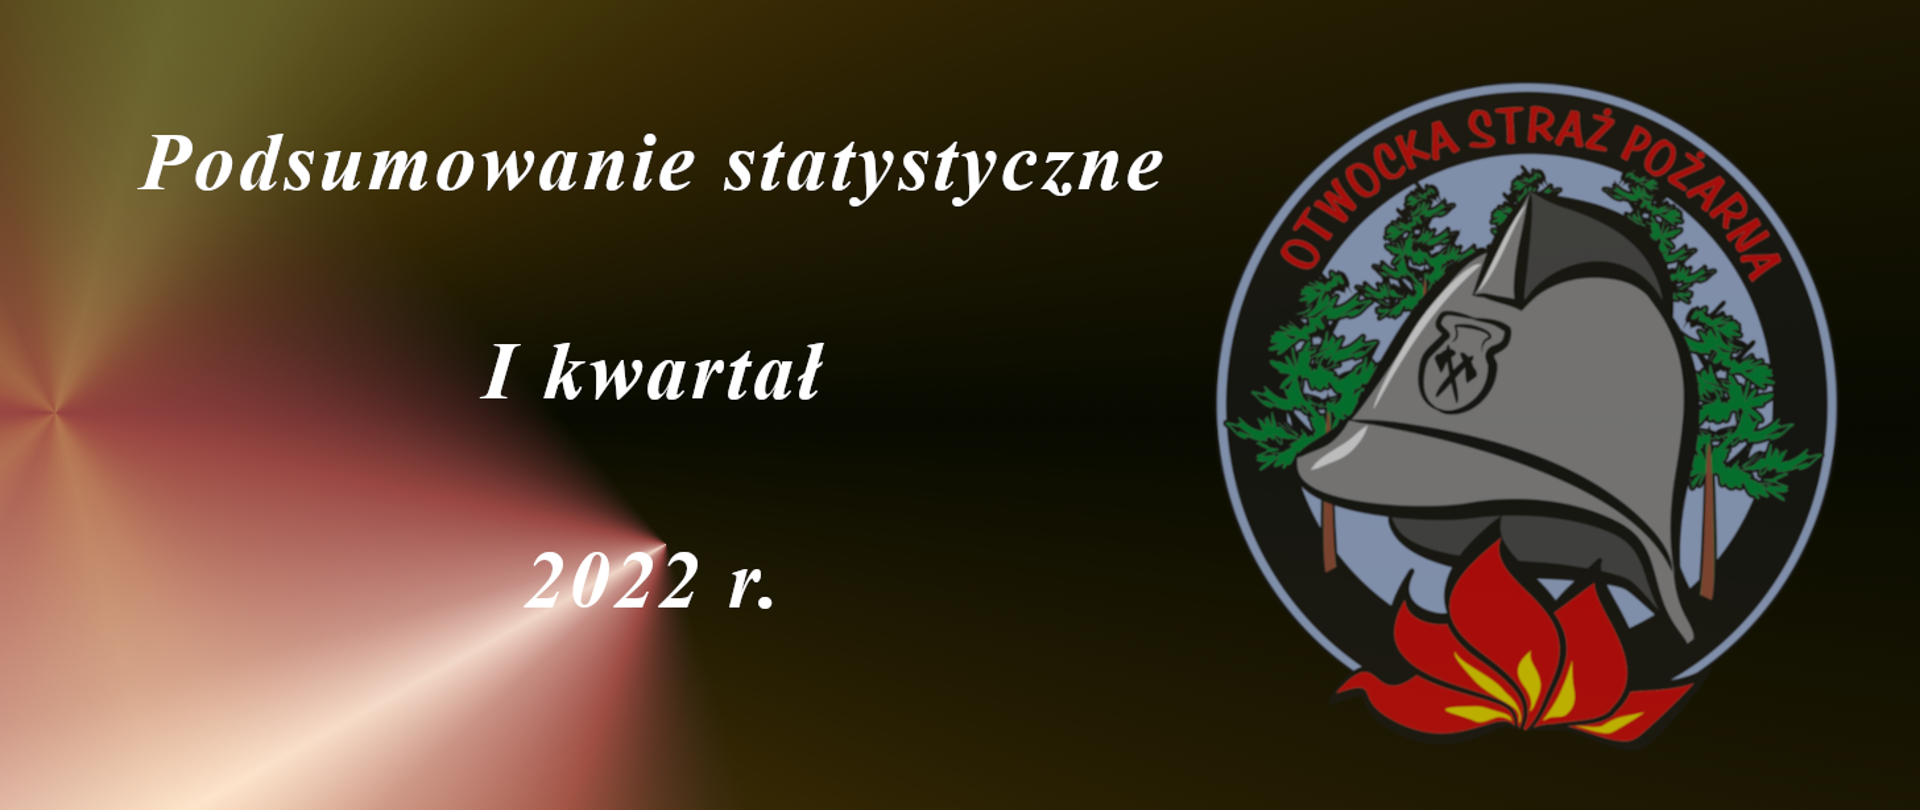 Na zdjęciu logo Otwockiej straży pożarnej i napis podsumowanie statystyczne i kwartał 2022 r.